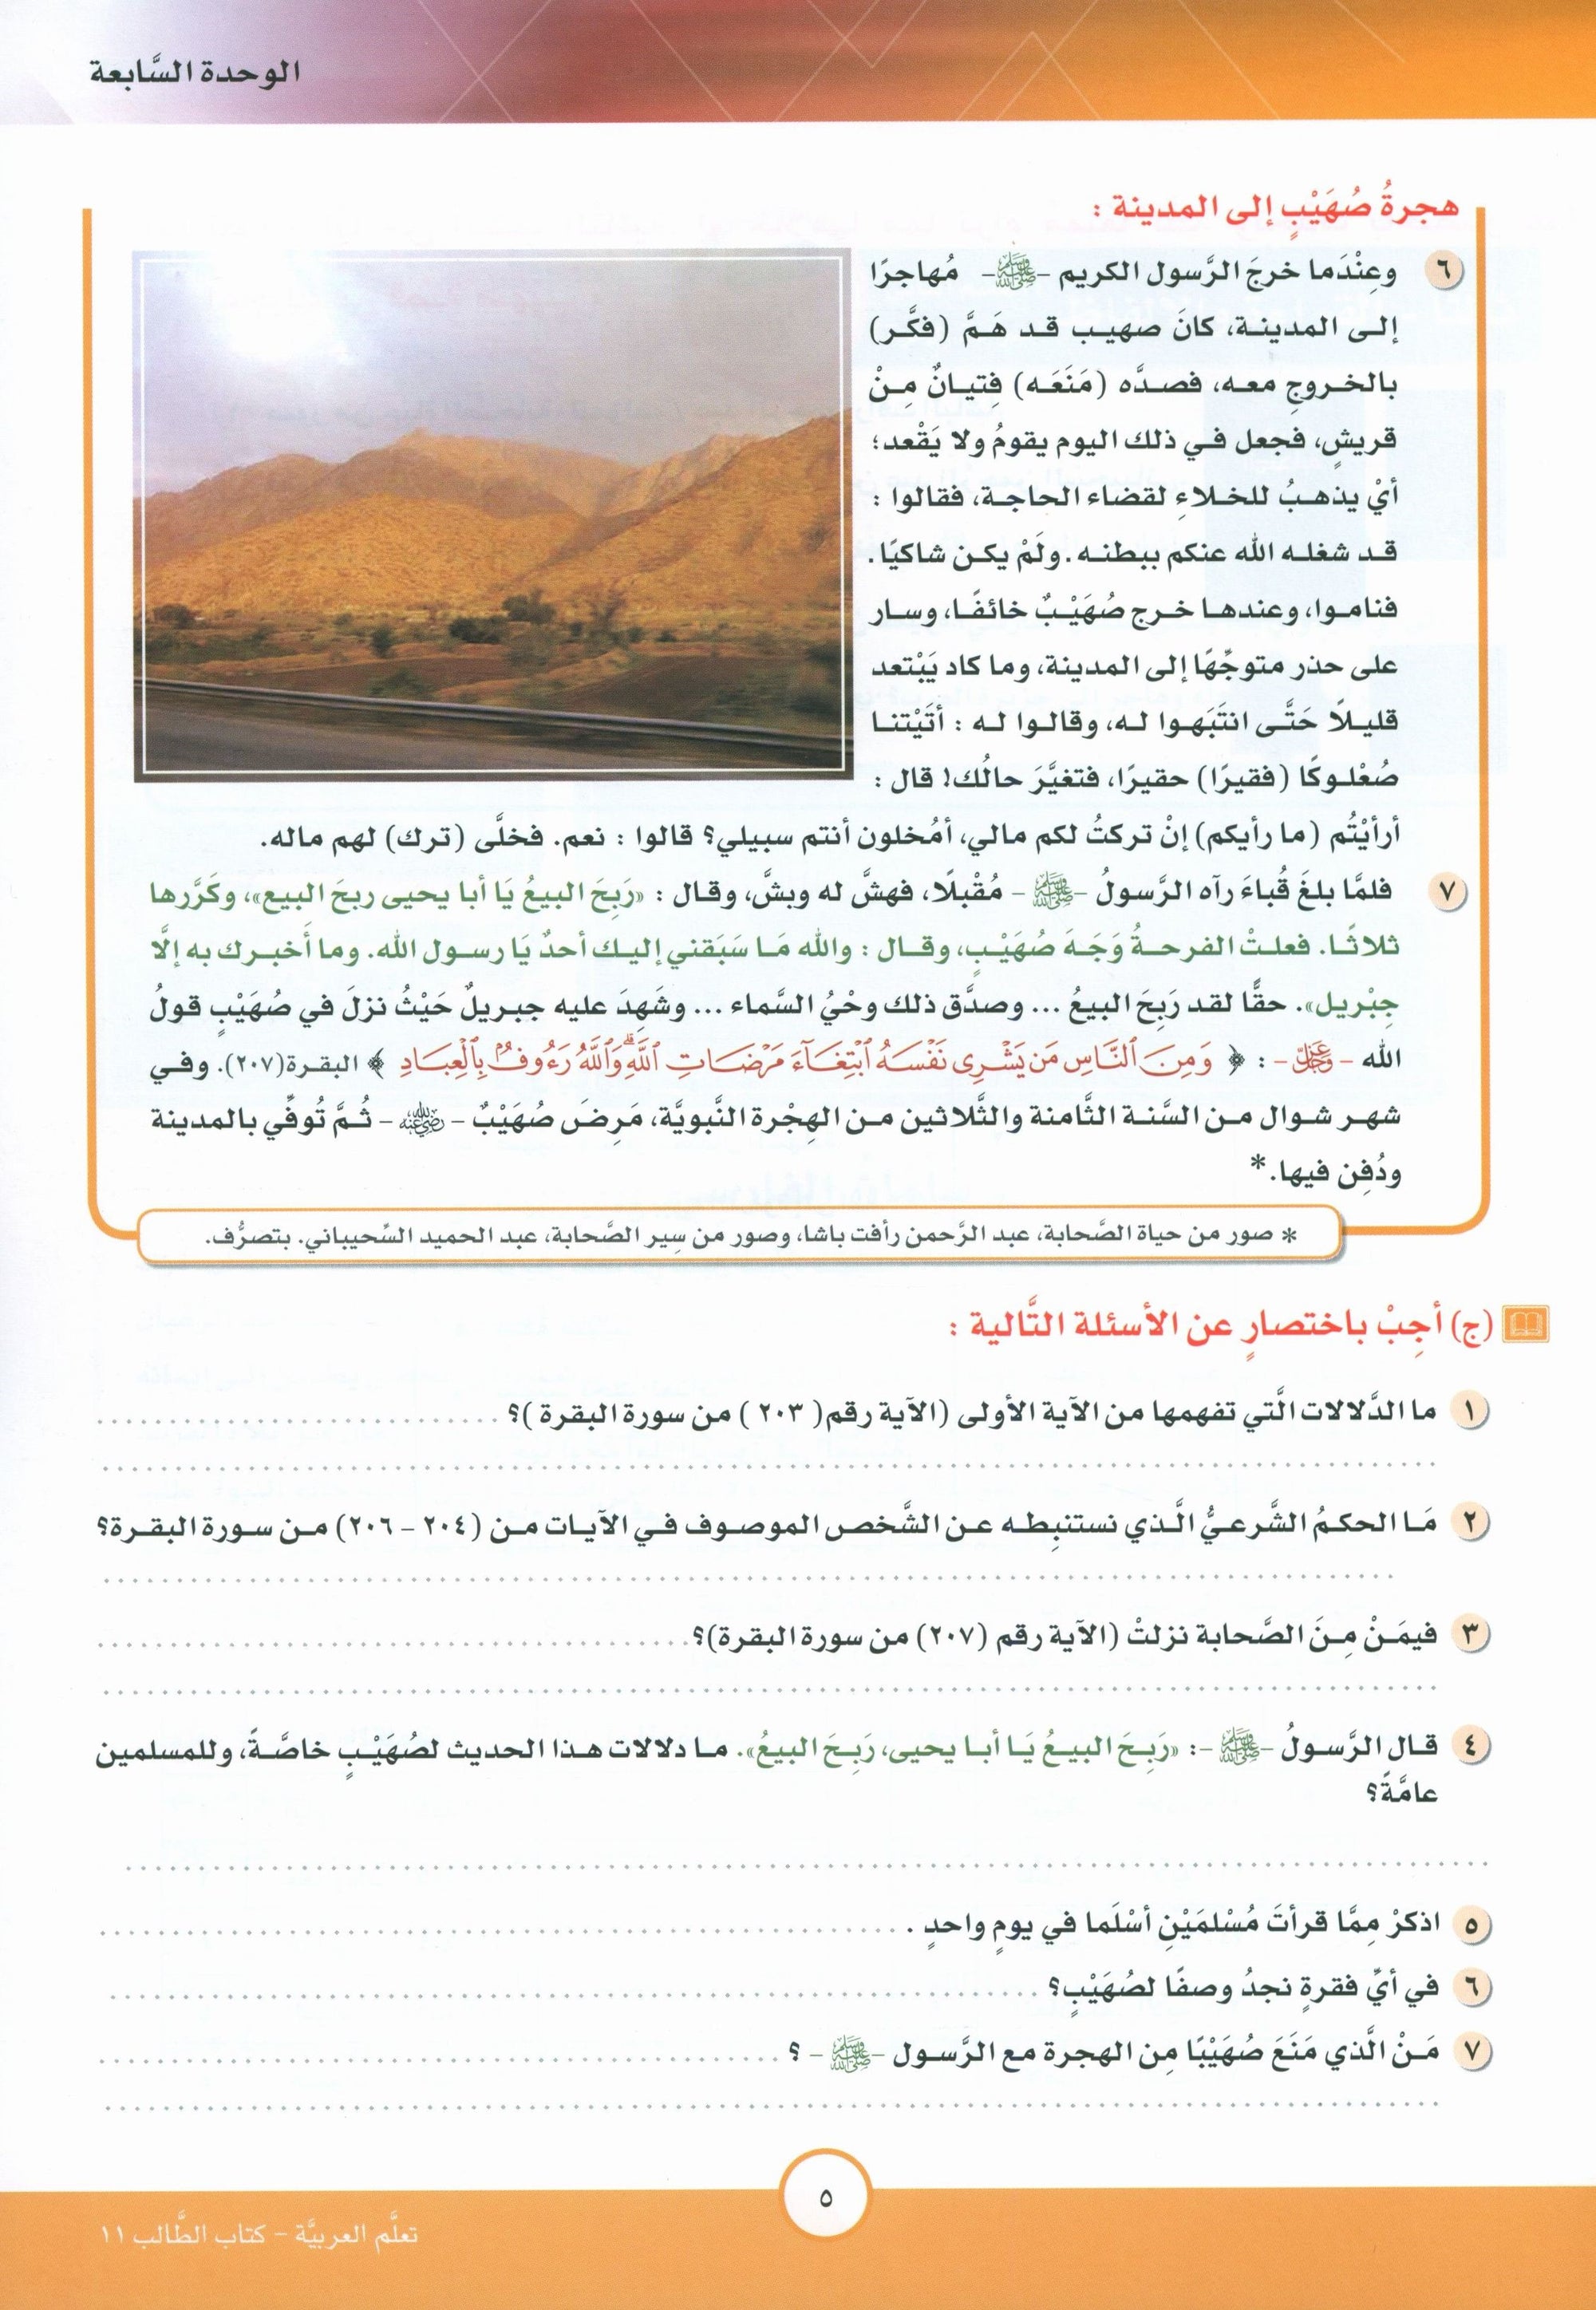 ICO Learn Arabic Textbook Level 11 Part 2 تعلم العربية كتاب التلميذ